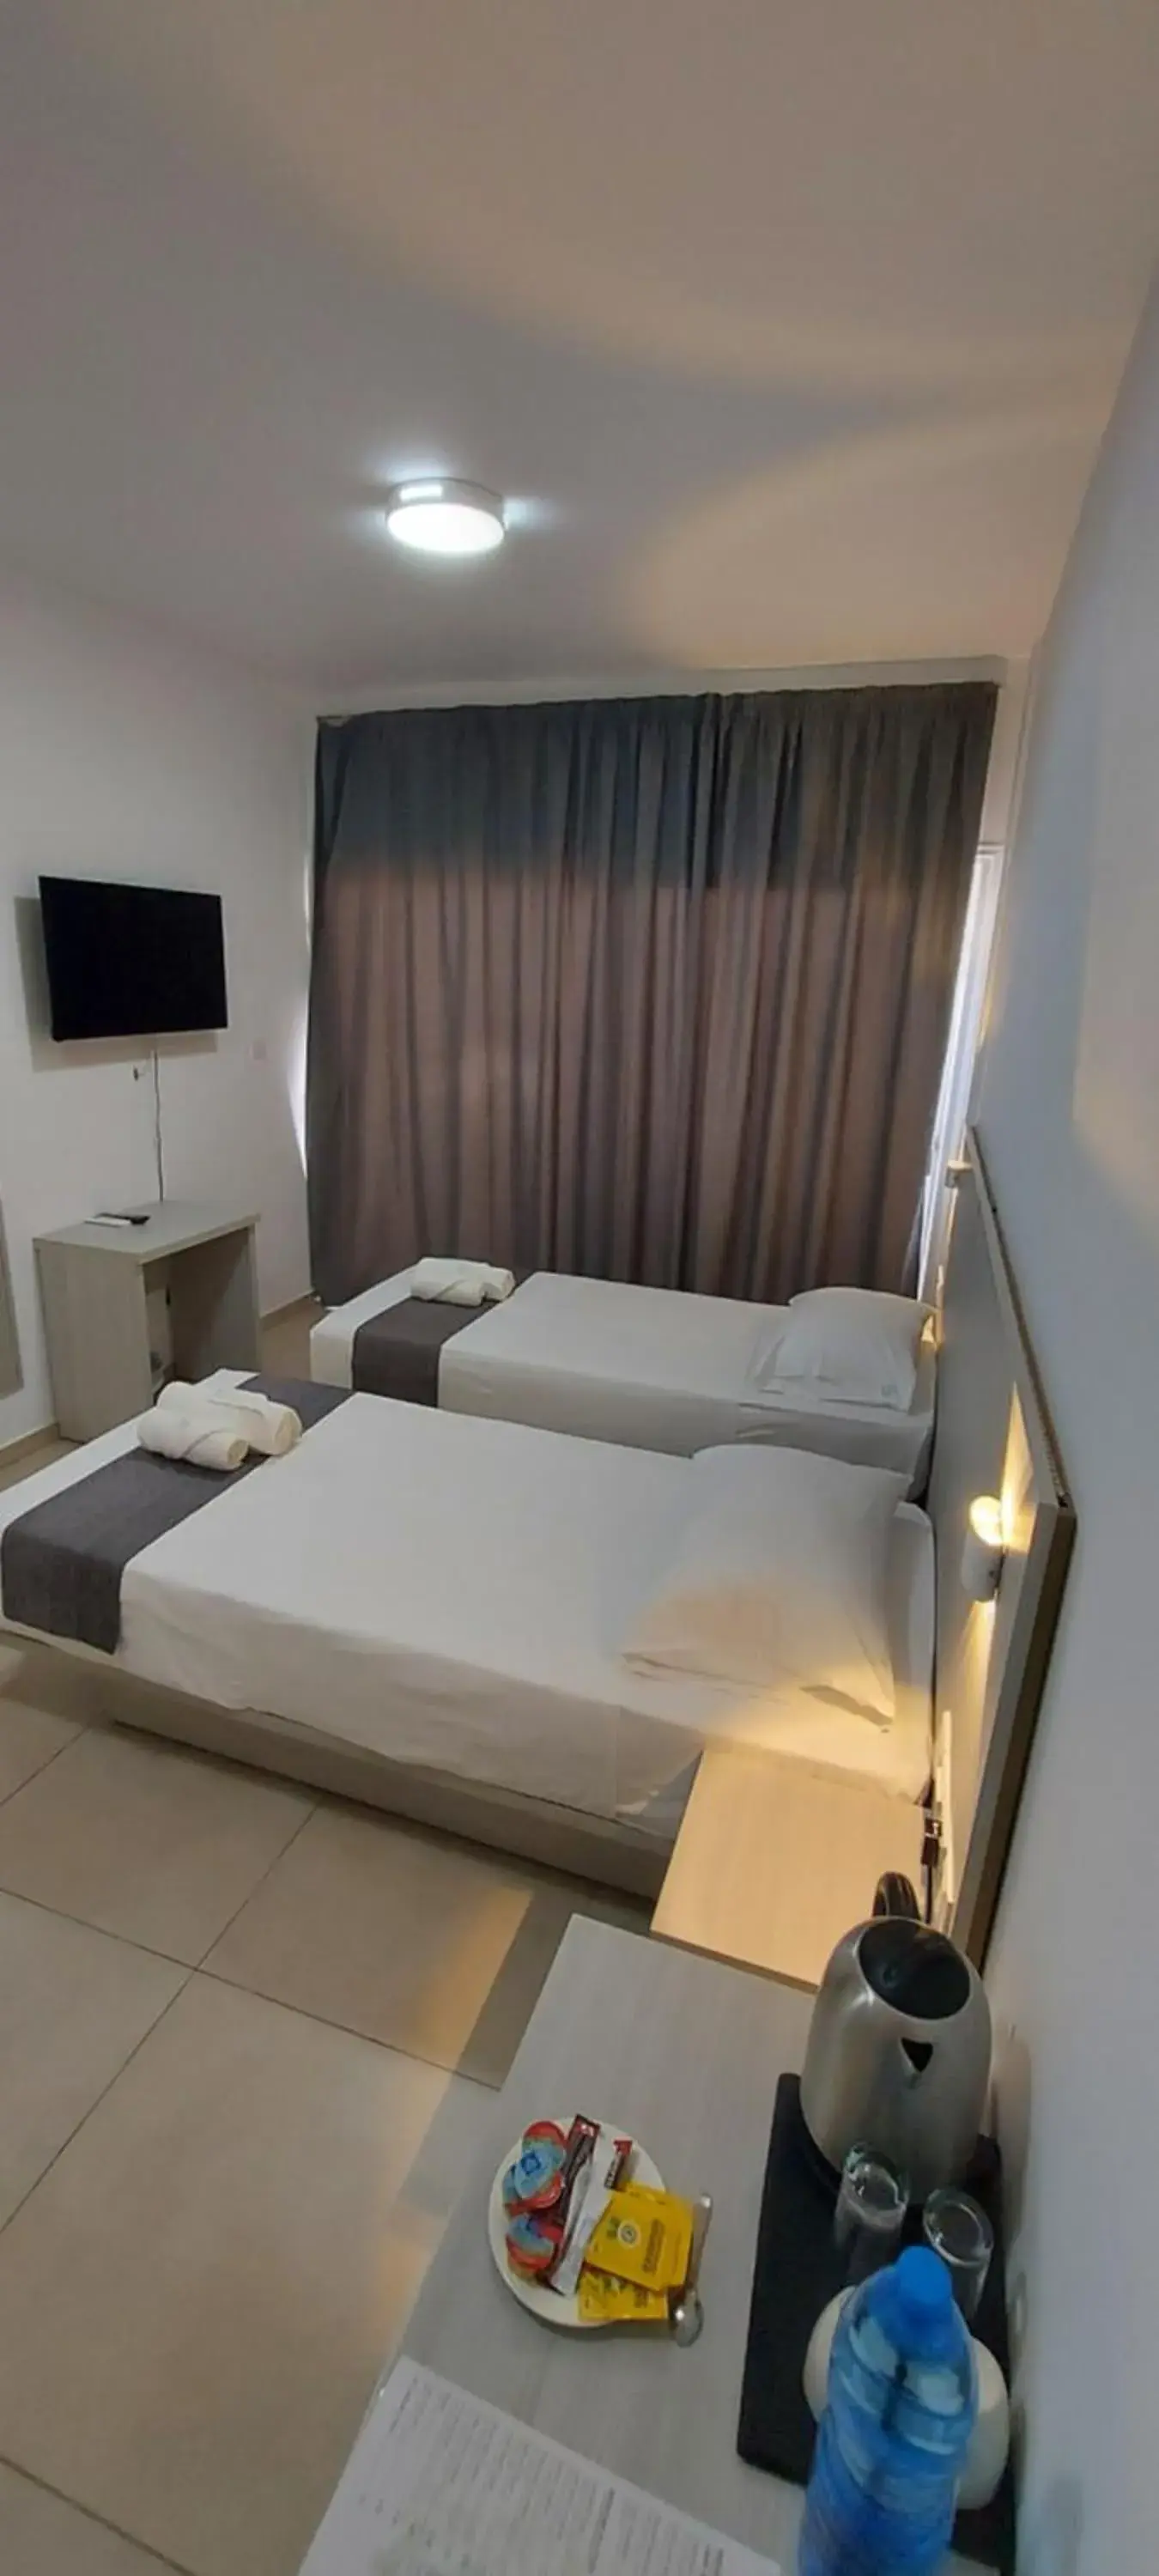 Bed in La Veranda Hotel